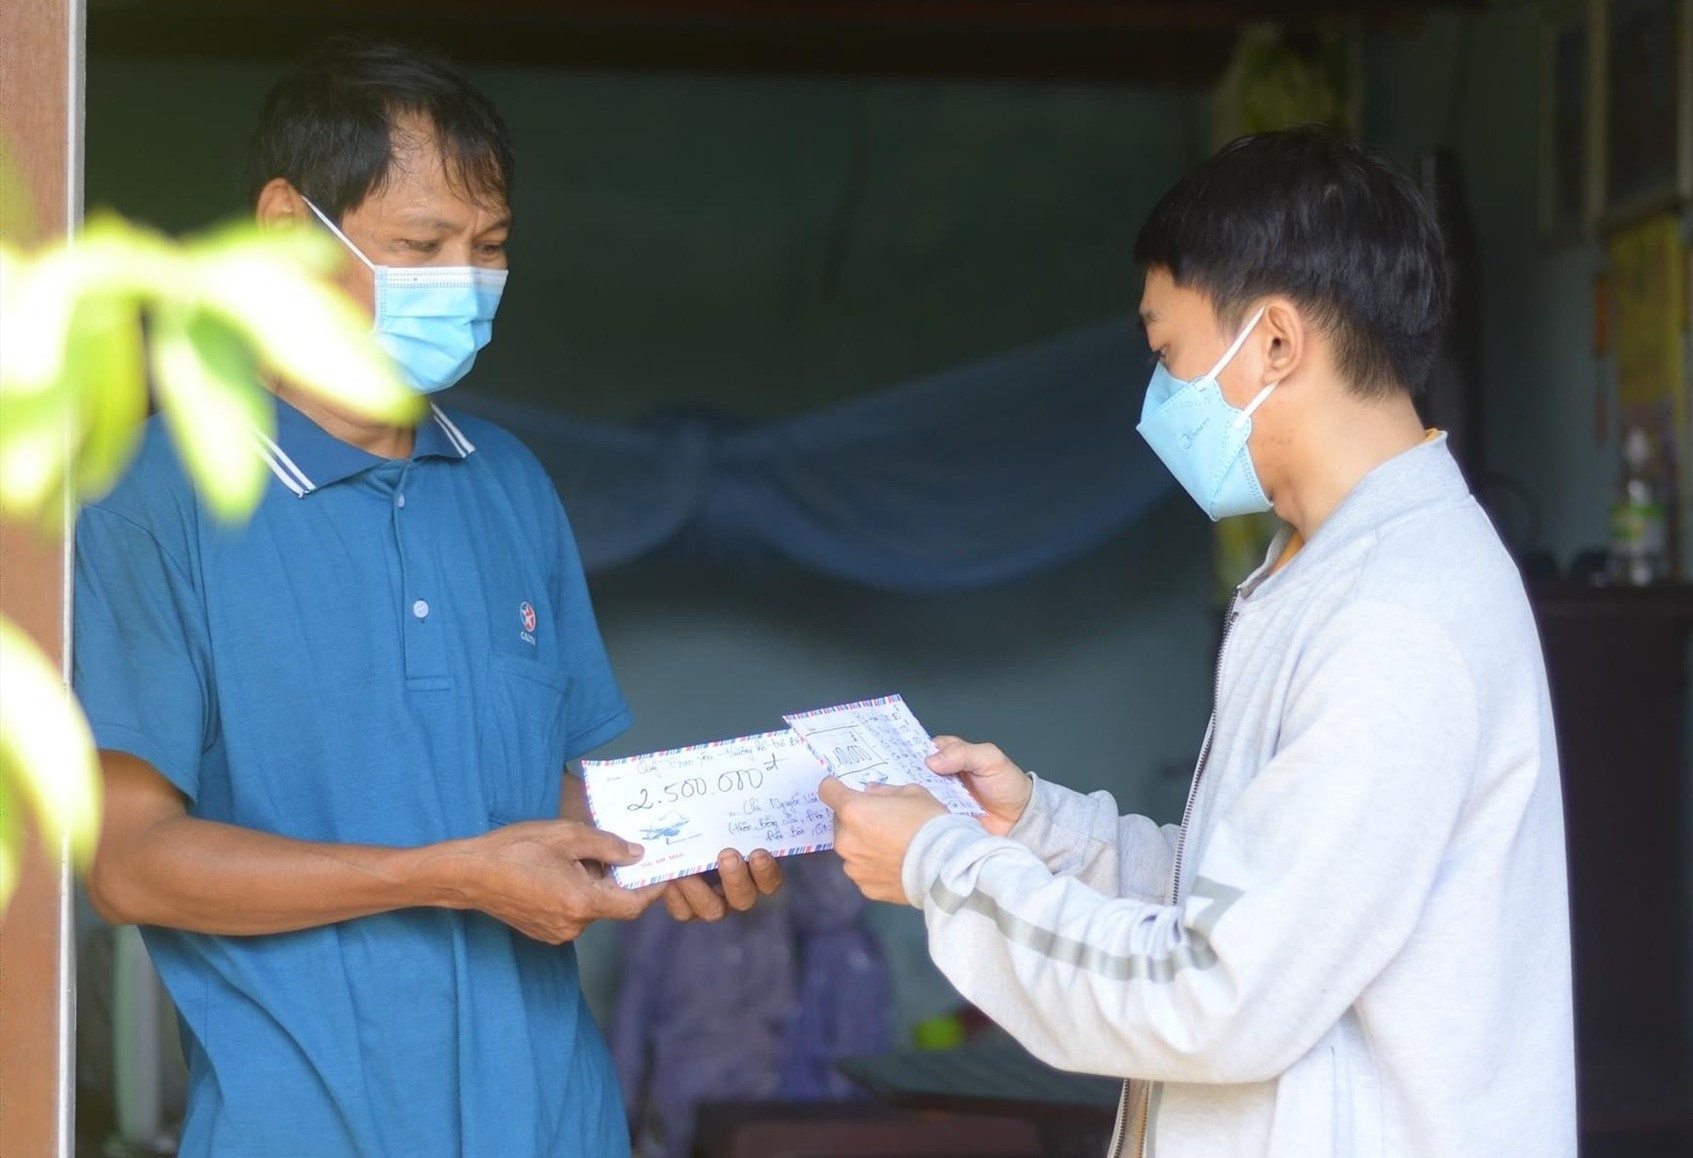 CLB Nhân ái trao số tiền gần 4 triệu đồng cho ông Nguyễn Văn Thành (trú tại Điện Minh, Điện Bàn). Ảnh: N.Trang